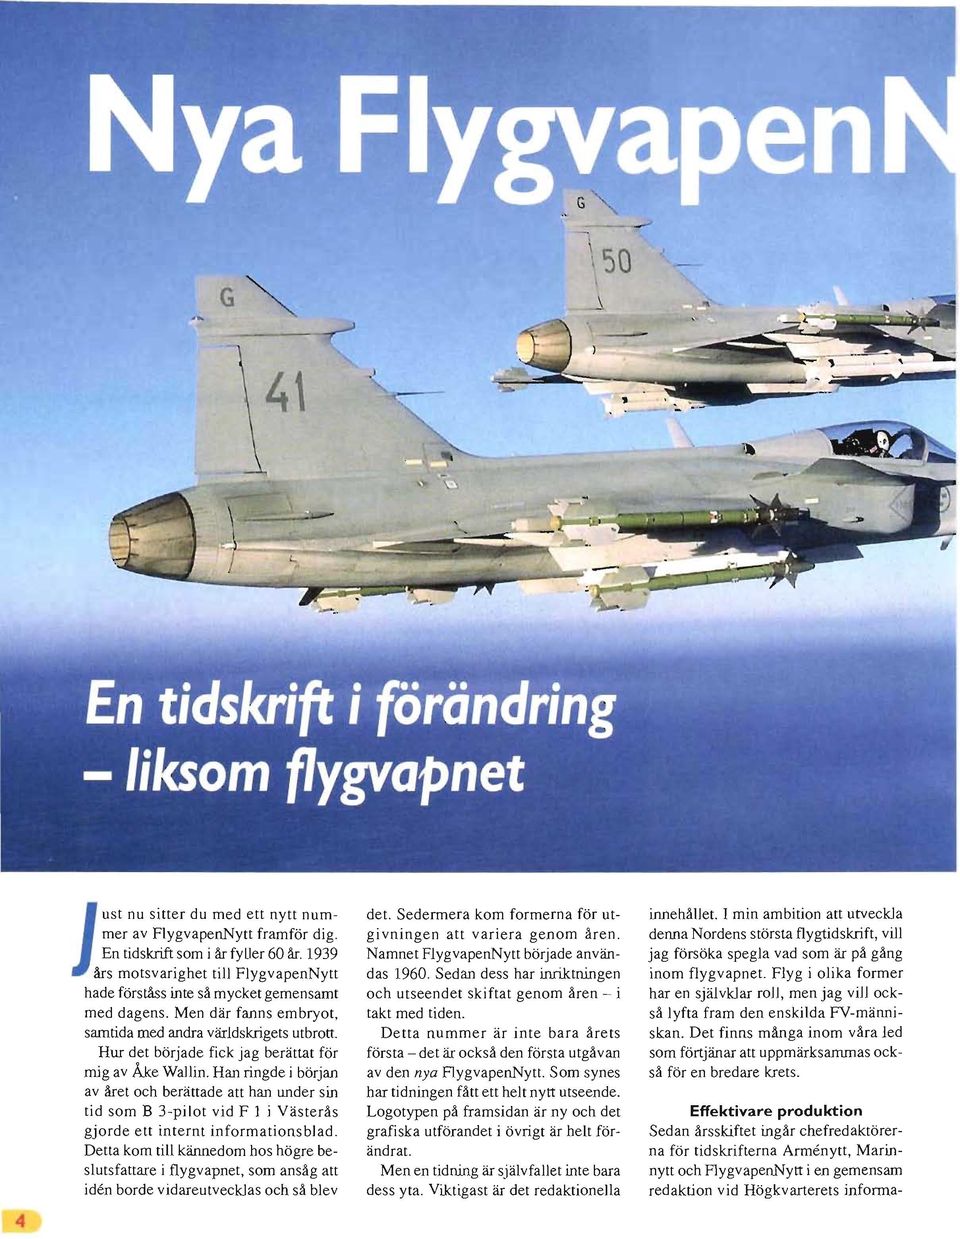 Han ringde i början av året och berättade att han under sin tid som B 3-pilot vid F l j Västerås gjorde ett internt informationsblad.